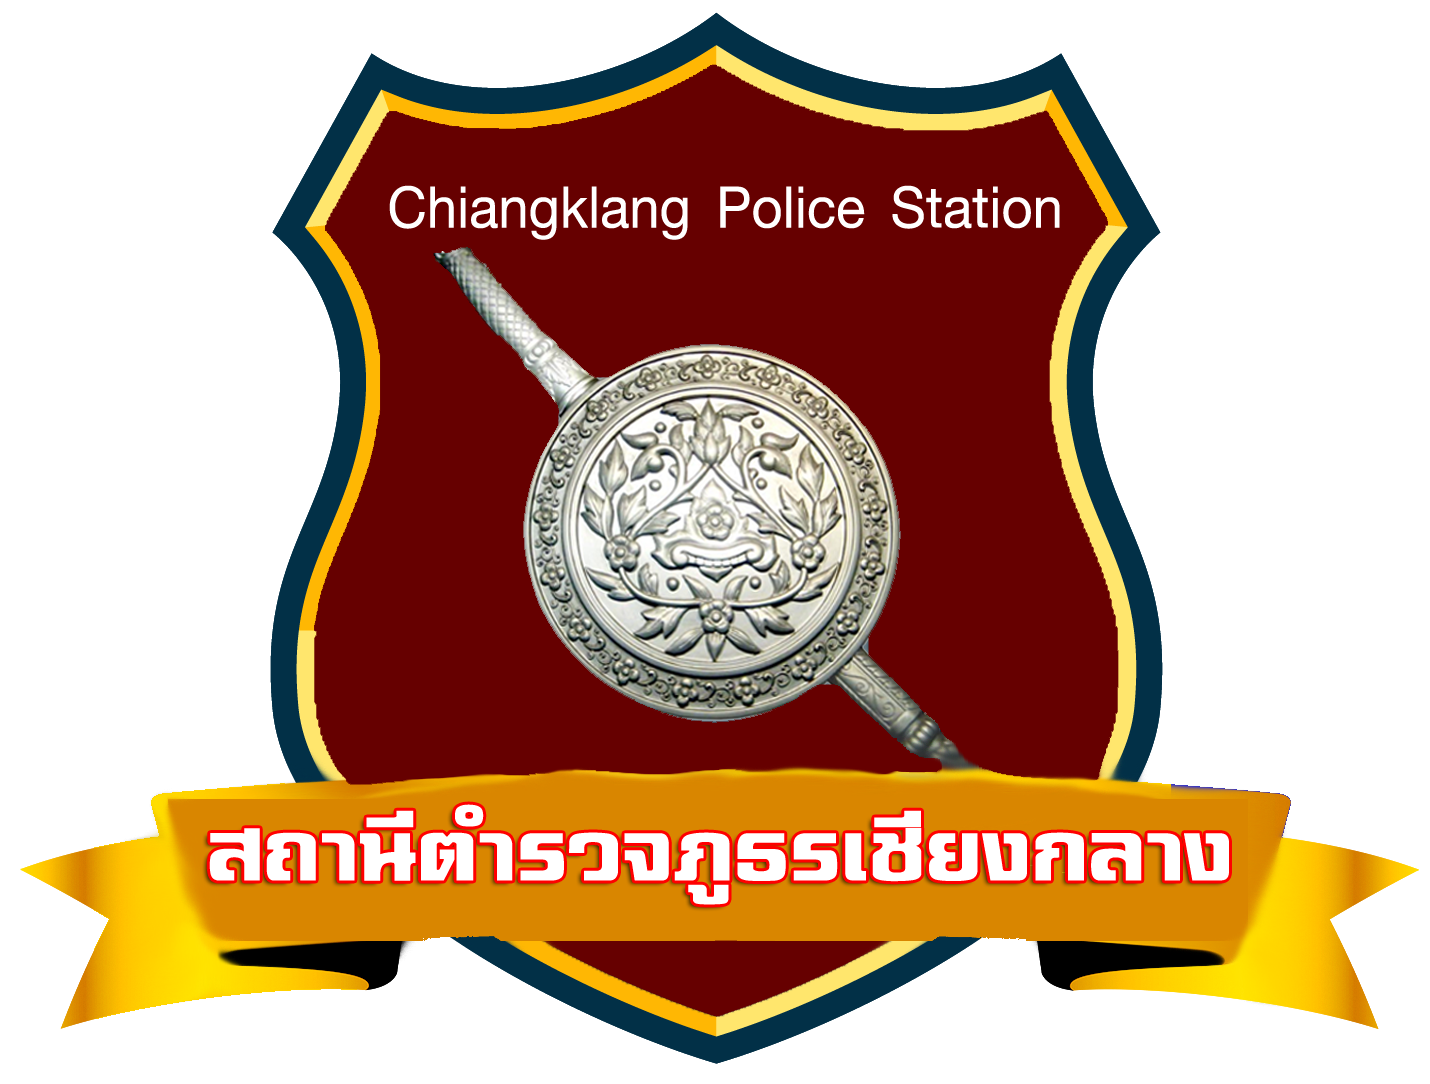 สถานีตำรวจภูธรเชียงกลาง logo